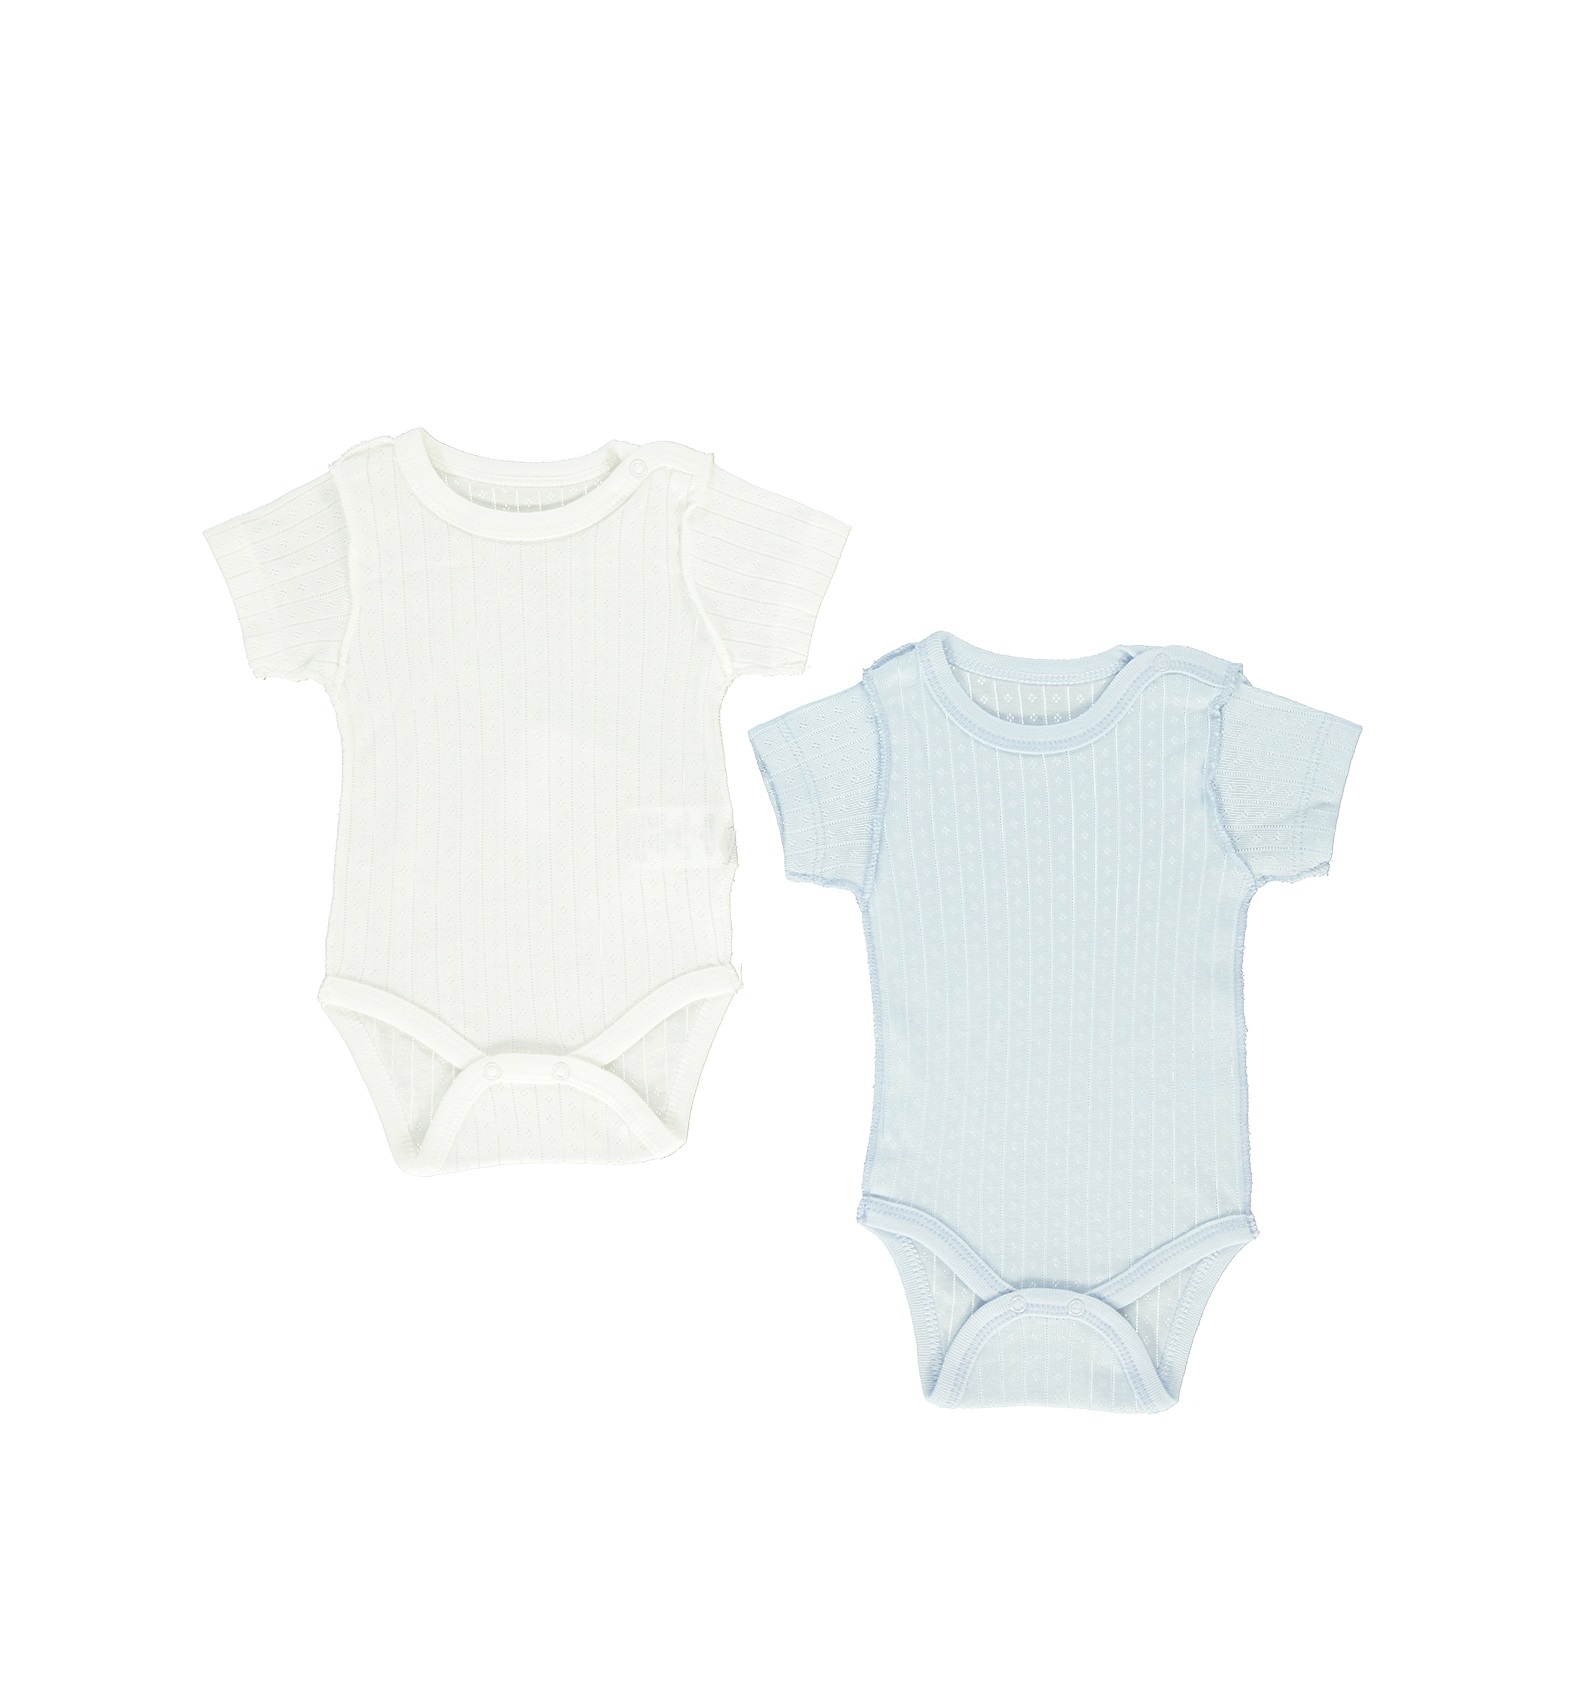 Παιδικά/Baby/Ρούχα/Φορμάκια-Κορμάκια SAM 0-13 - Βρεφικά φορμάκια σετ των 2 SAM 0-13 POINTEL εκρού μπλε